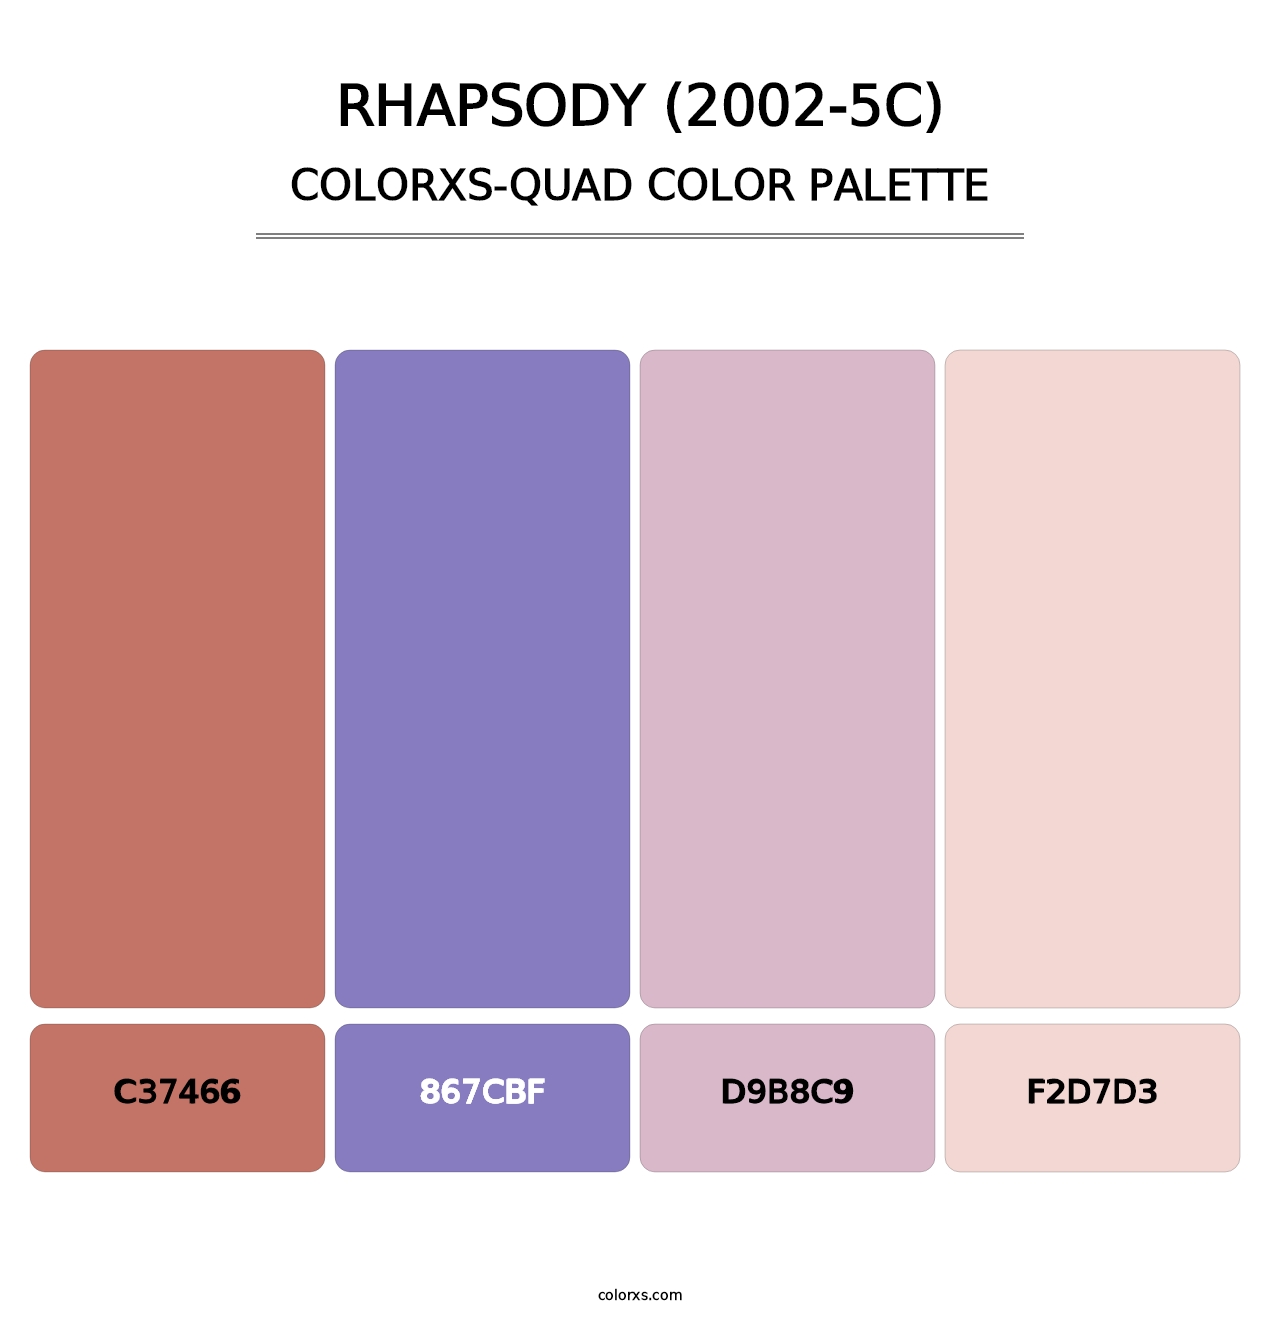 Rhapsody (2002-5C) - Colorxs Quad Palette